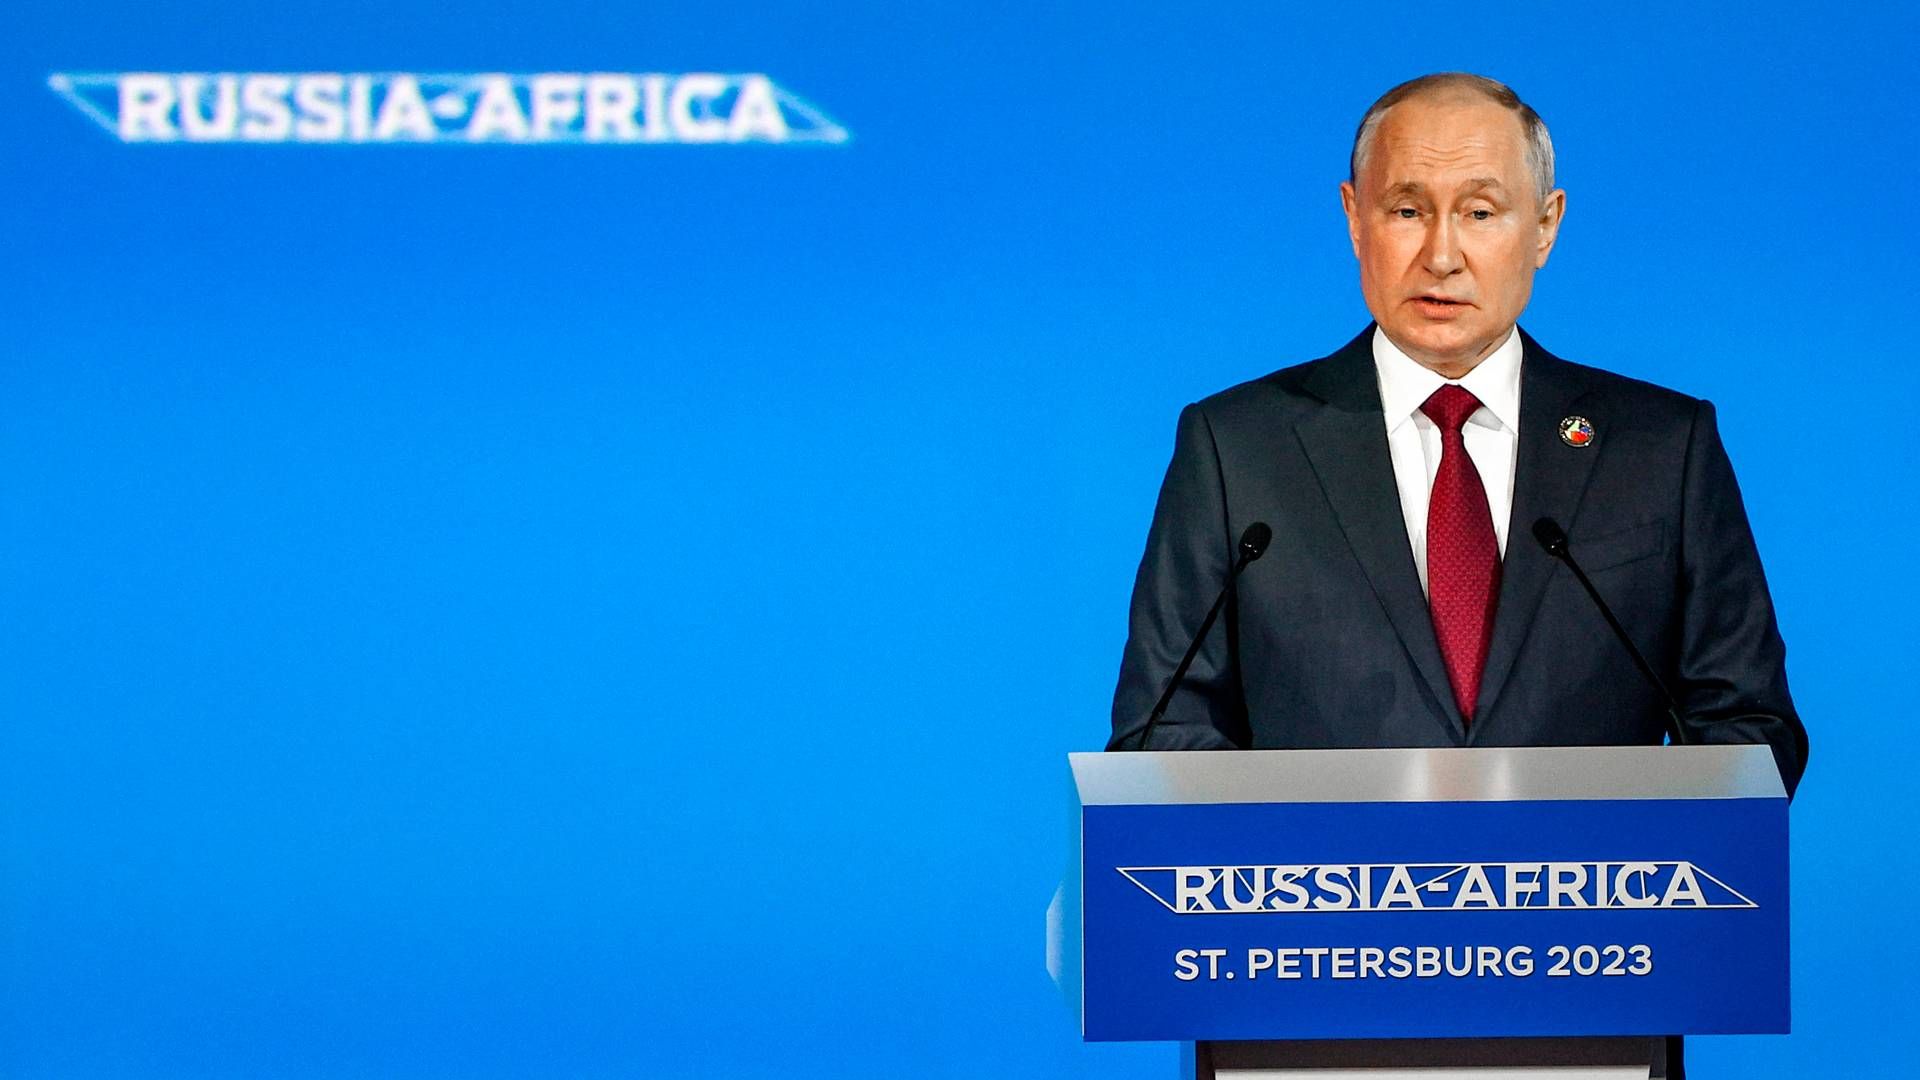 Putin lover gratis korn til en række afrikanske lande på topmøde i Skt. Petersborg. | Foto: Yegor Aleyev